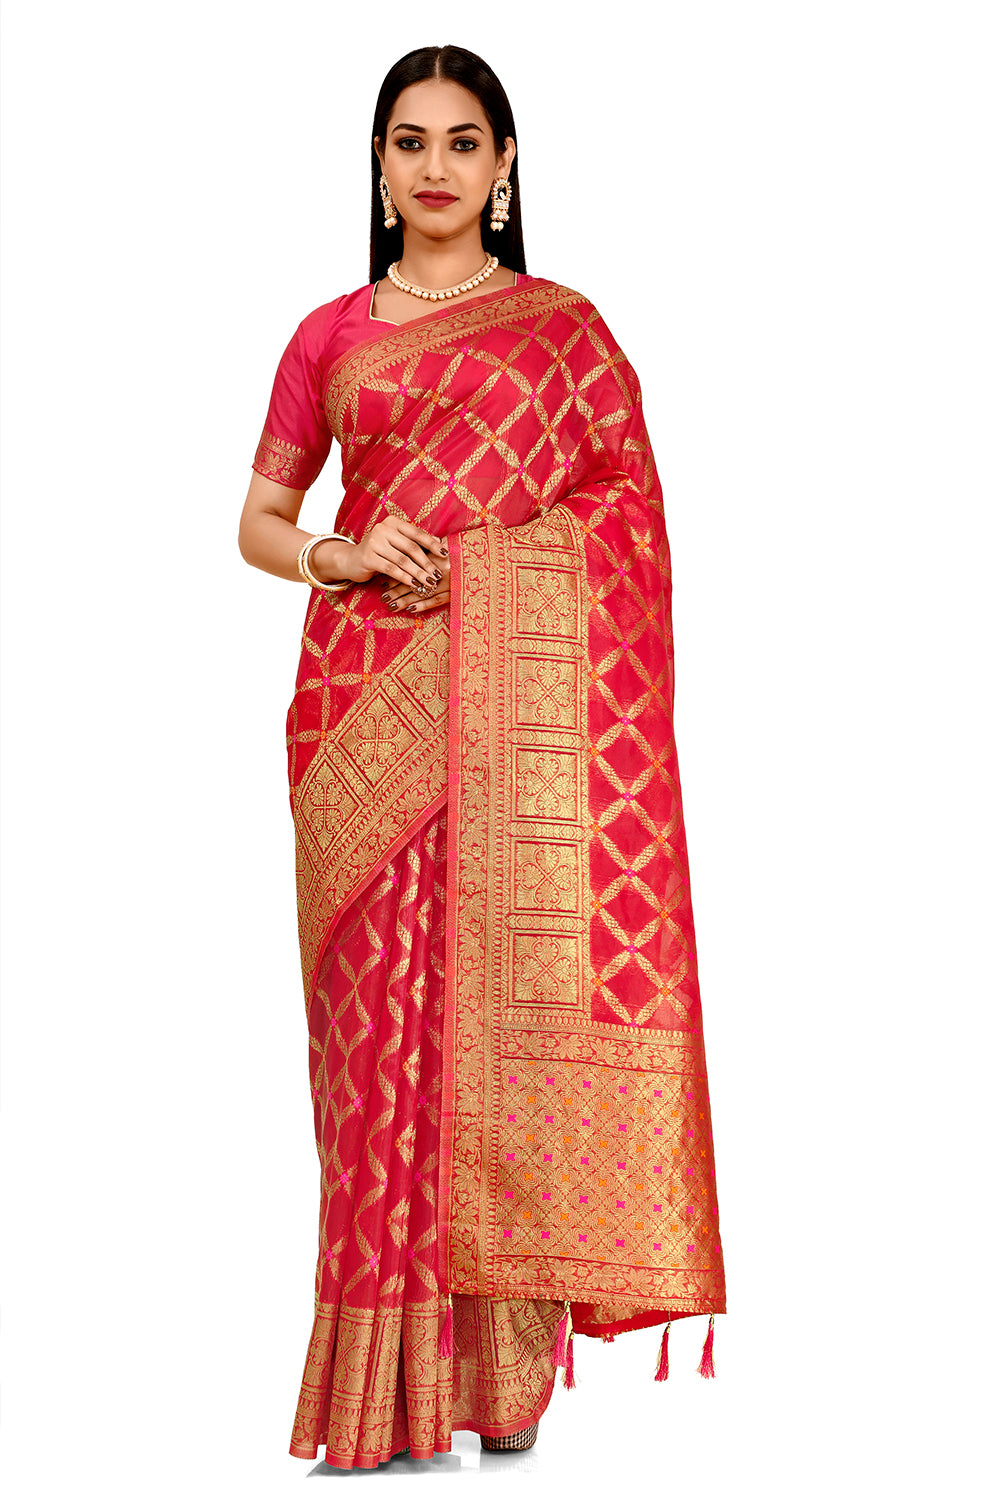 Shop Gajari Pink Color Indian Designer Silk Saree Online